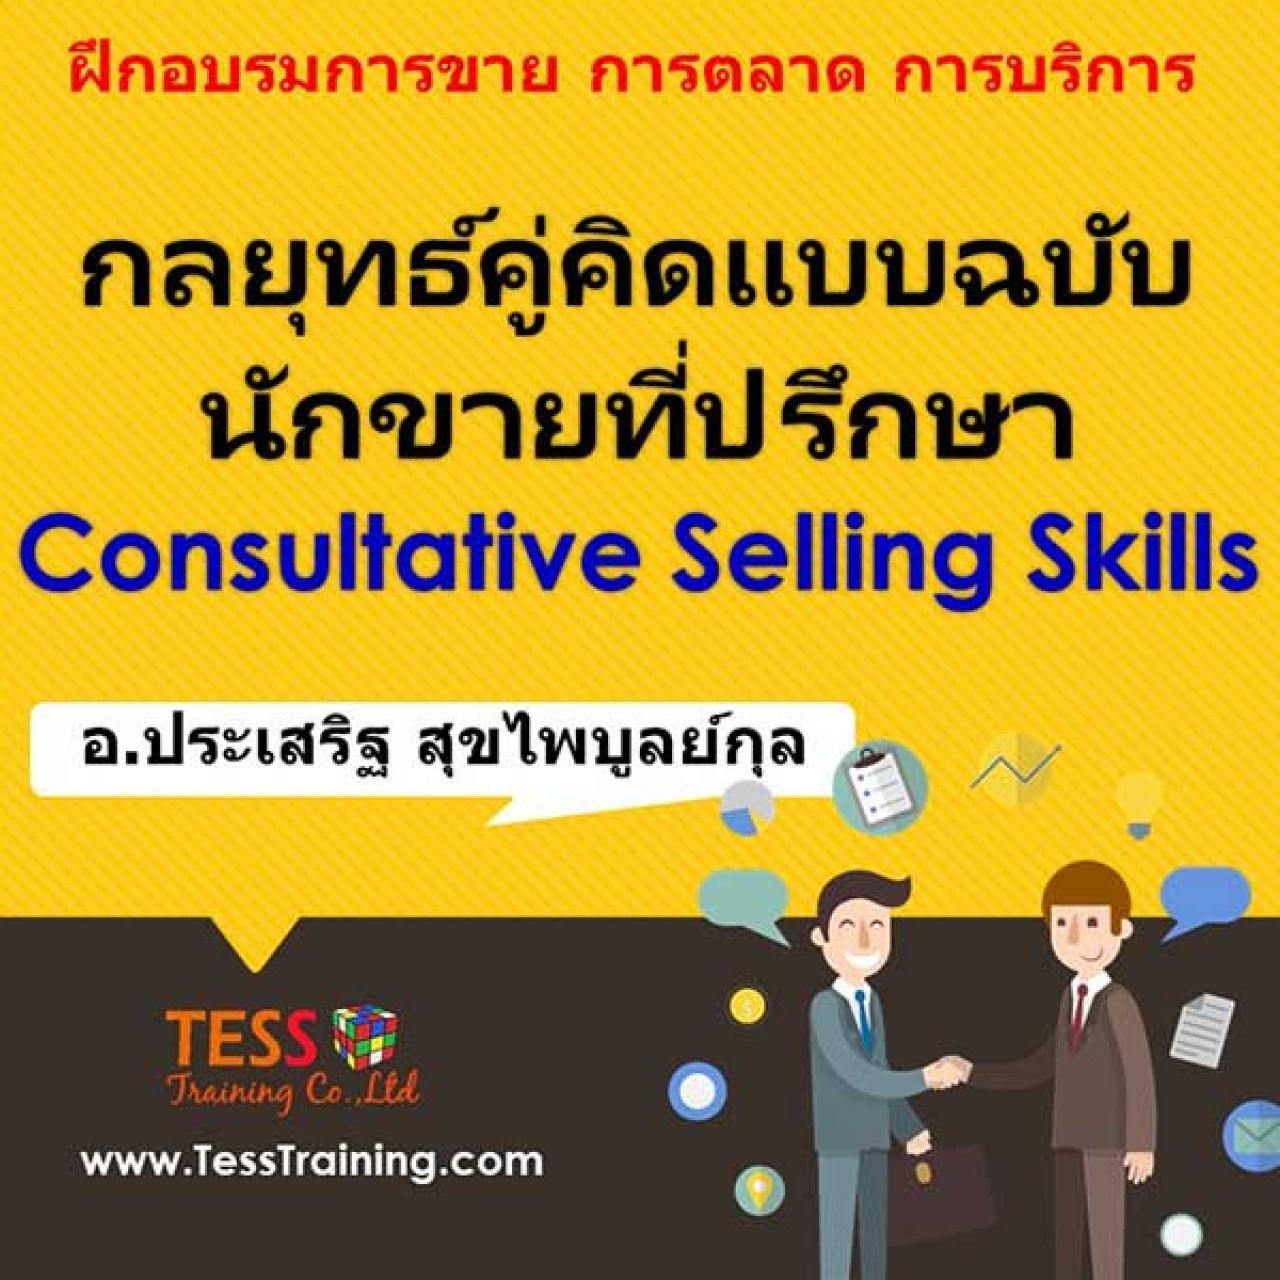 กลยุทธ์คู่คิดแบบฉบับ นักขายที่ปรึกษา Consultative Selling Skills ( 27 ก.พ.62) Posted on ธันวาคม 25, 2018 by admin